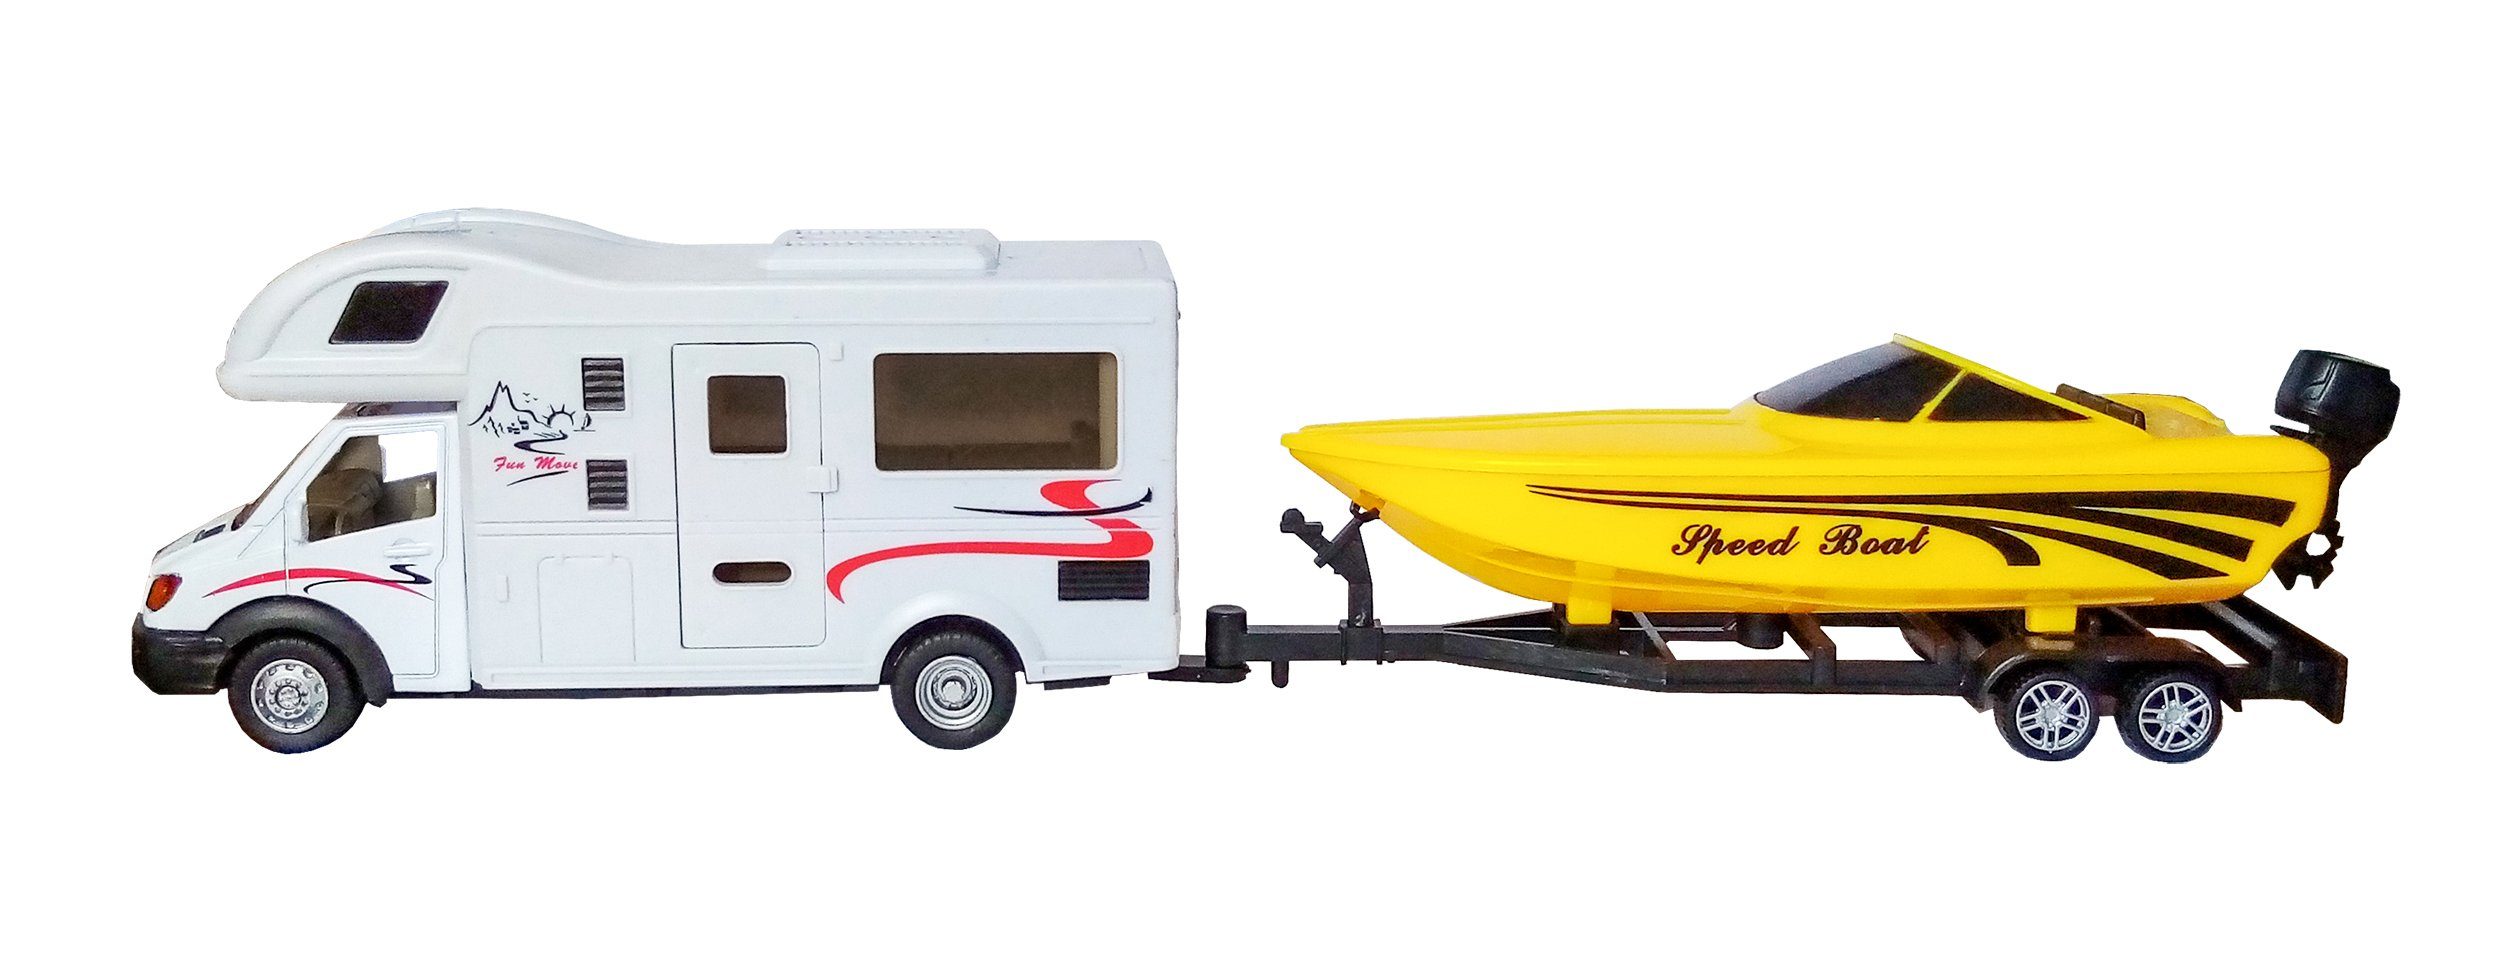 Toi-Toys Spielzeug-Bus WOHNMOBIL mit Anhänger & Schnellboot mit Rückzug 69, Camper Modell Wohnwagen Boot Bus Spielzeug Kinder